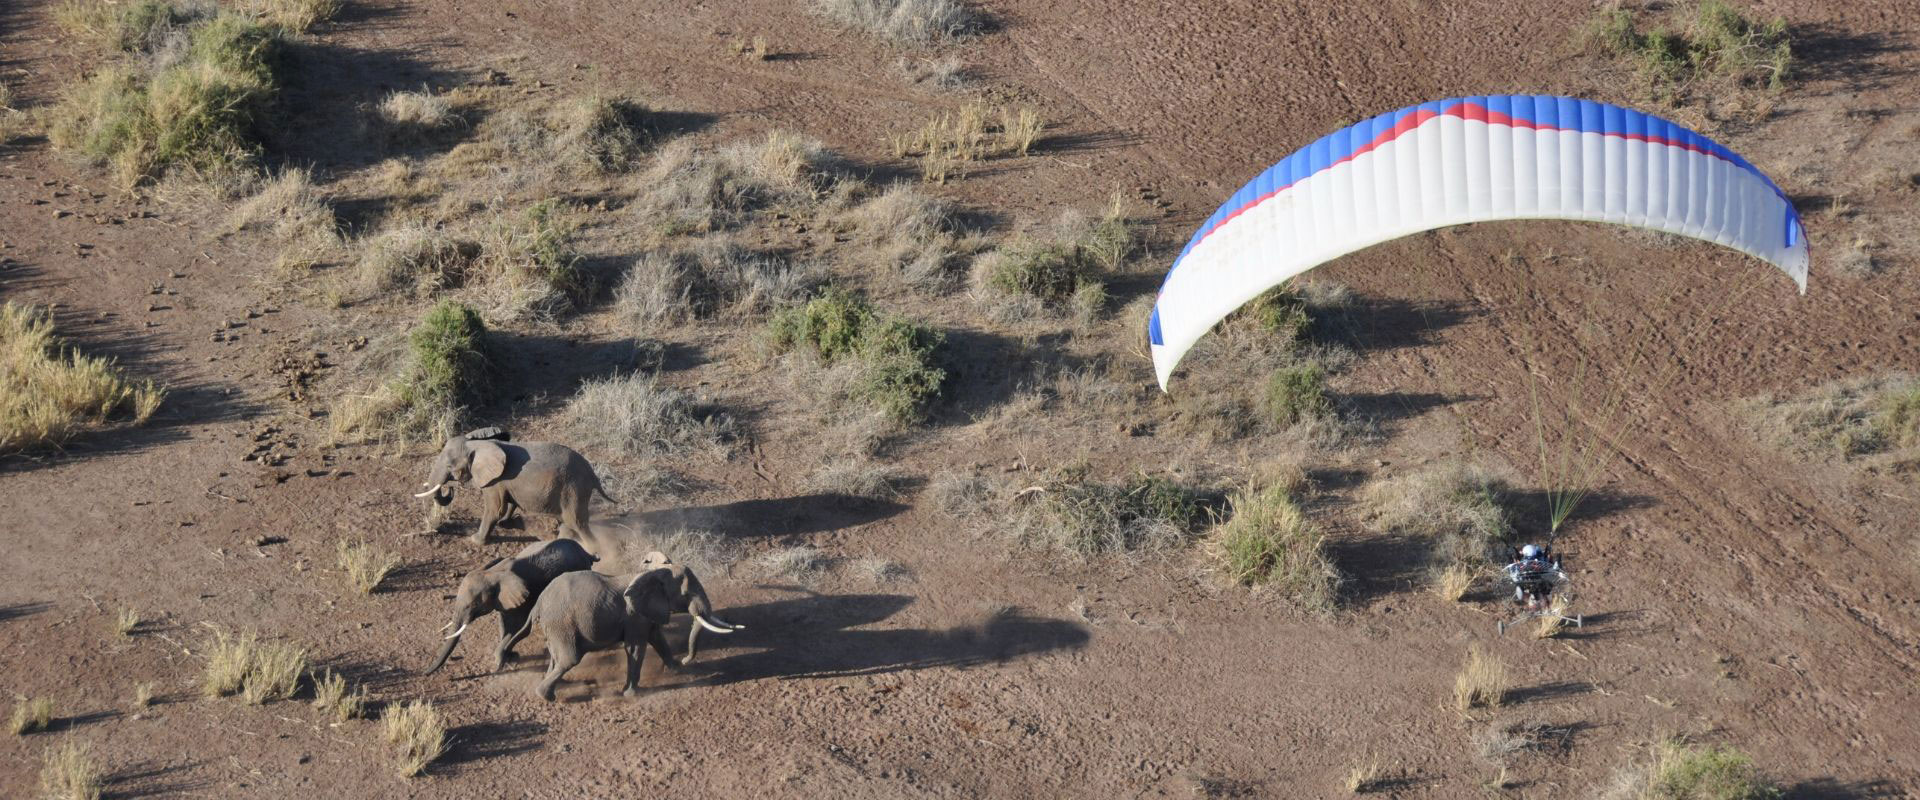 paramotor volando con elefantes